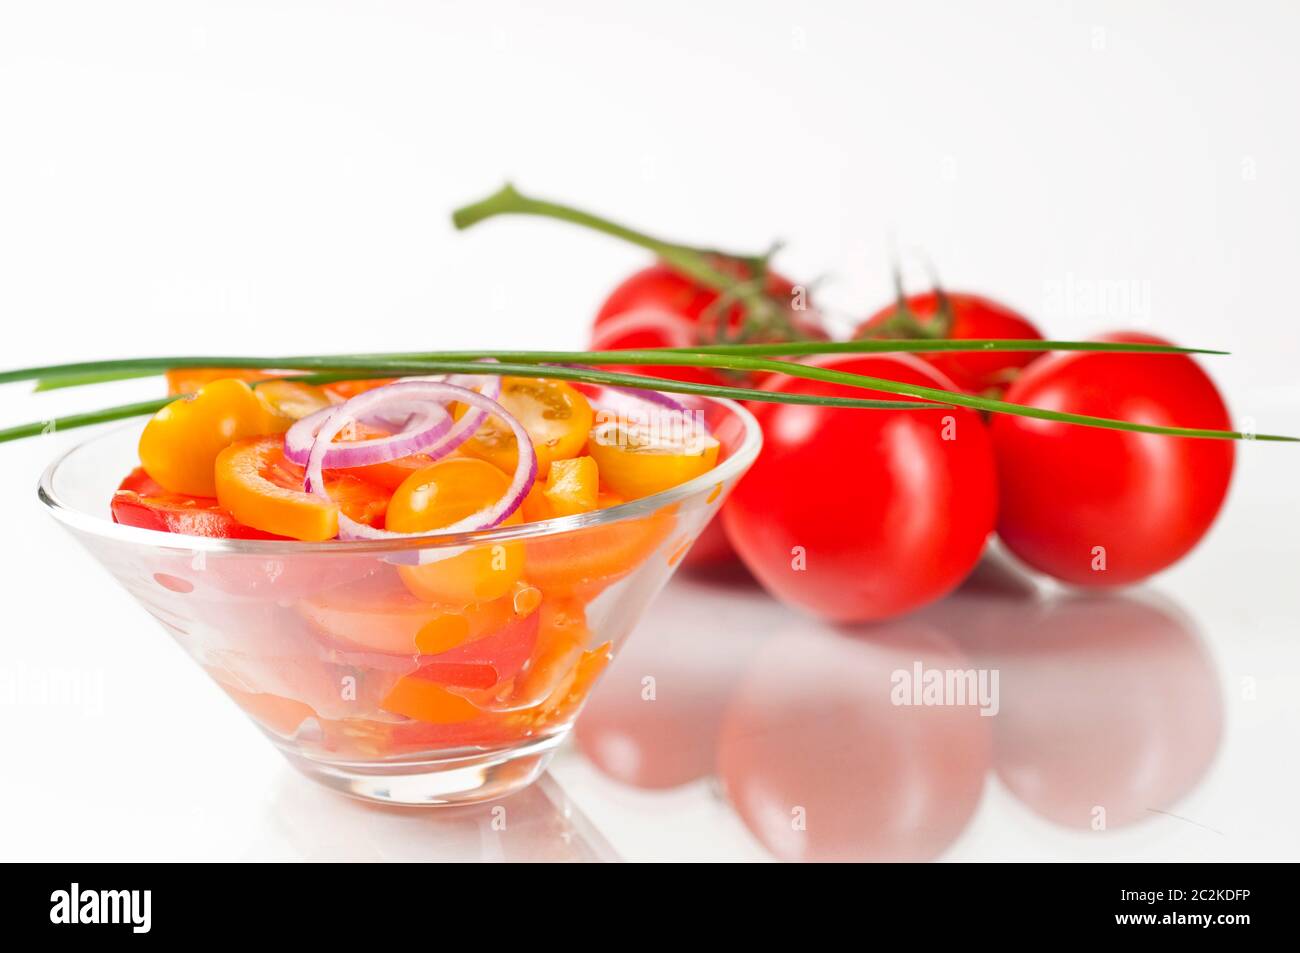 Tomatensalat in Glasschale auf weißem Hintergrund mit Spiegelung Stock Photo